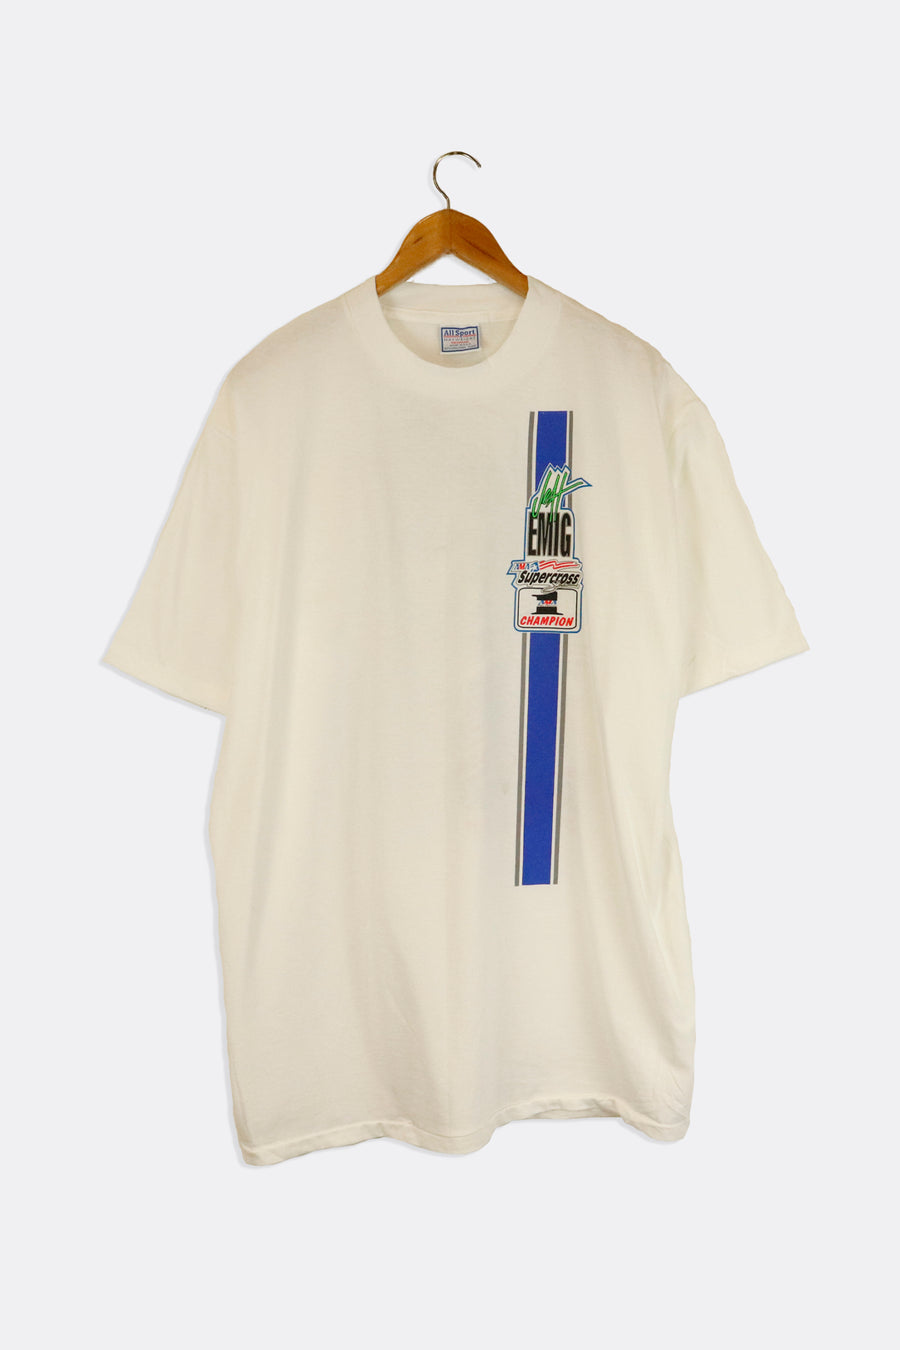 Vintage Supercross Jeff Emig T Shirt Sz XL